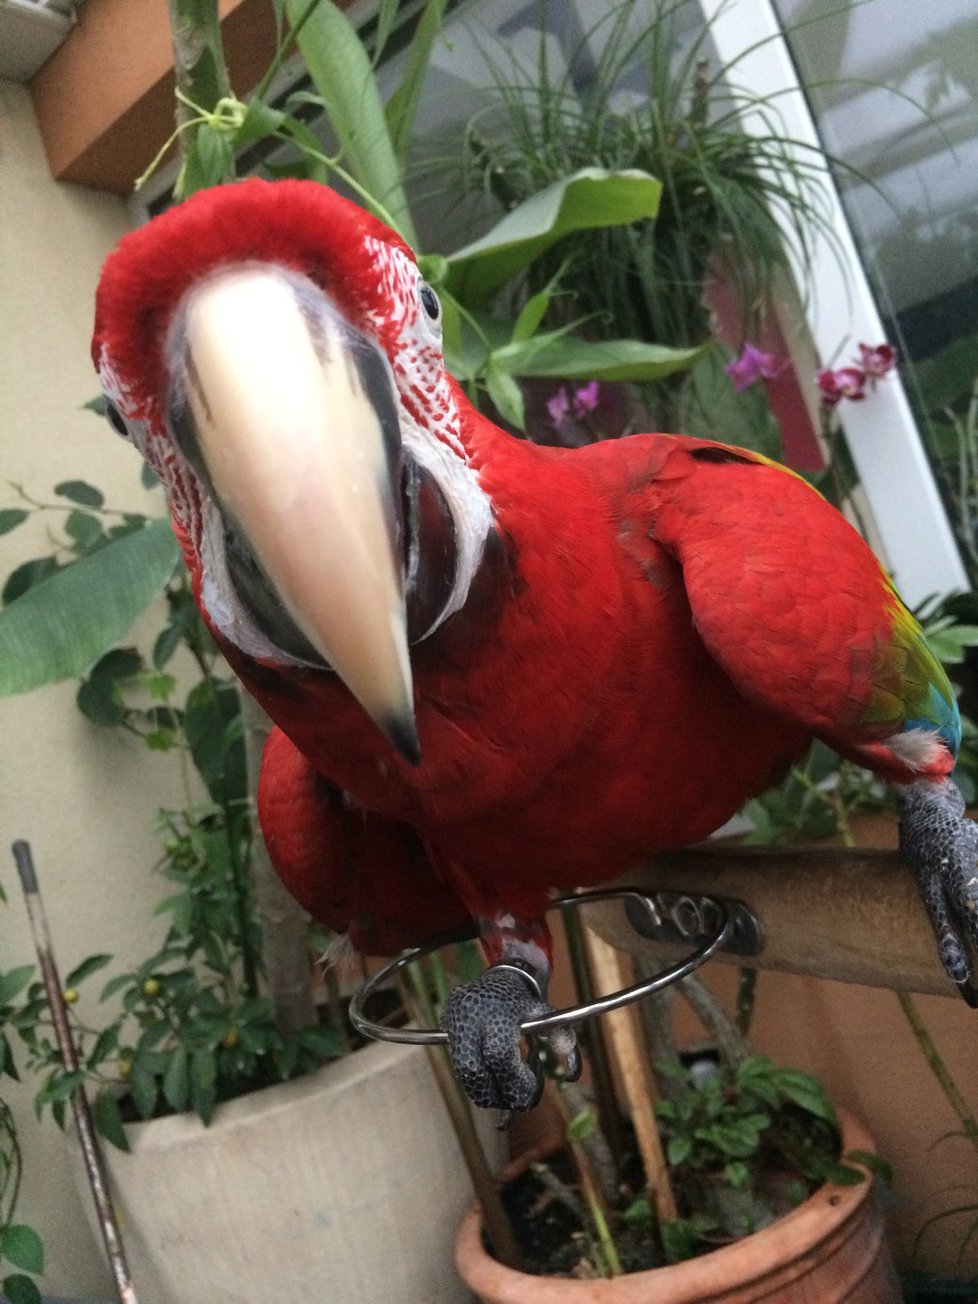 Láďa má exotiku přímo v jednom z pražských bytů. V zimní zahradě mu poletují dva papoušci- ara zelenokřídlý a eklektus.